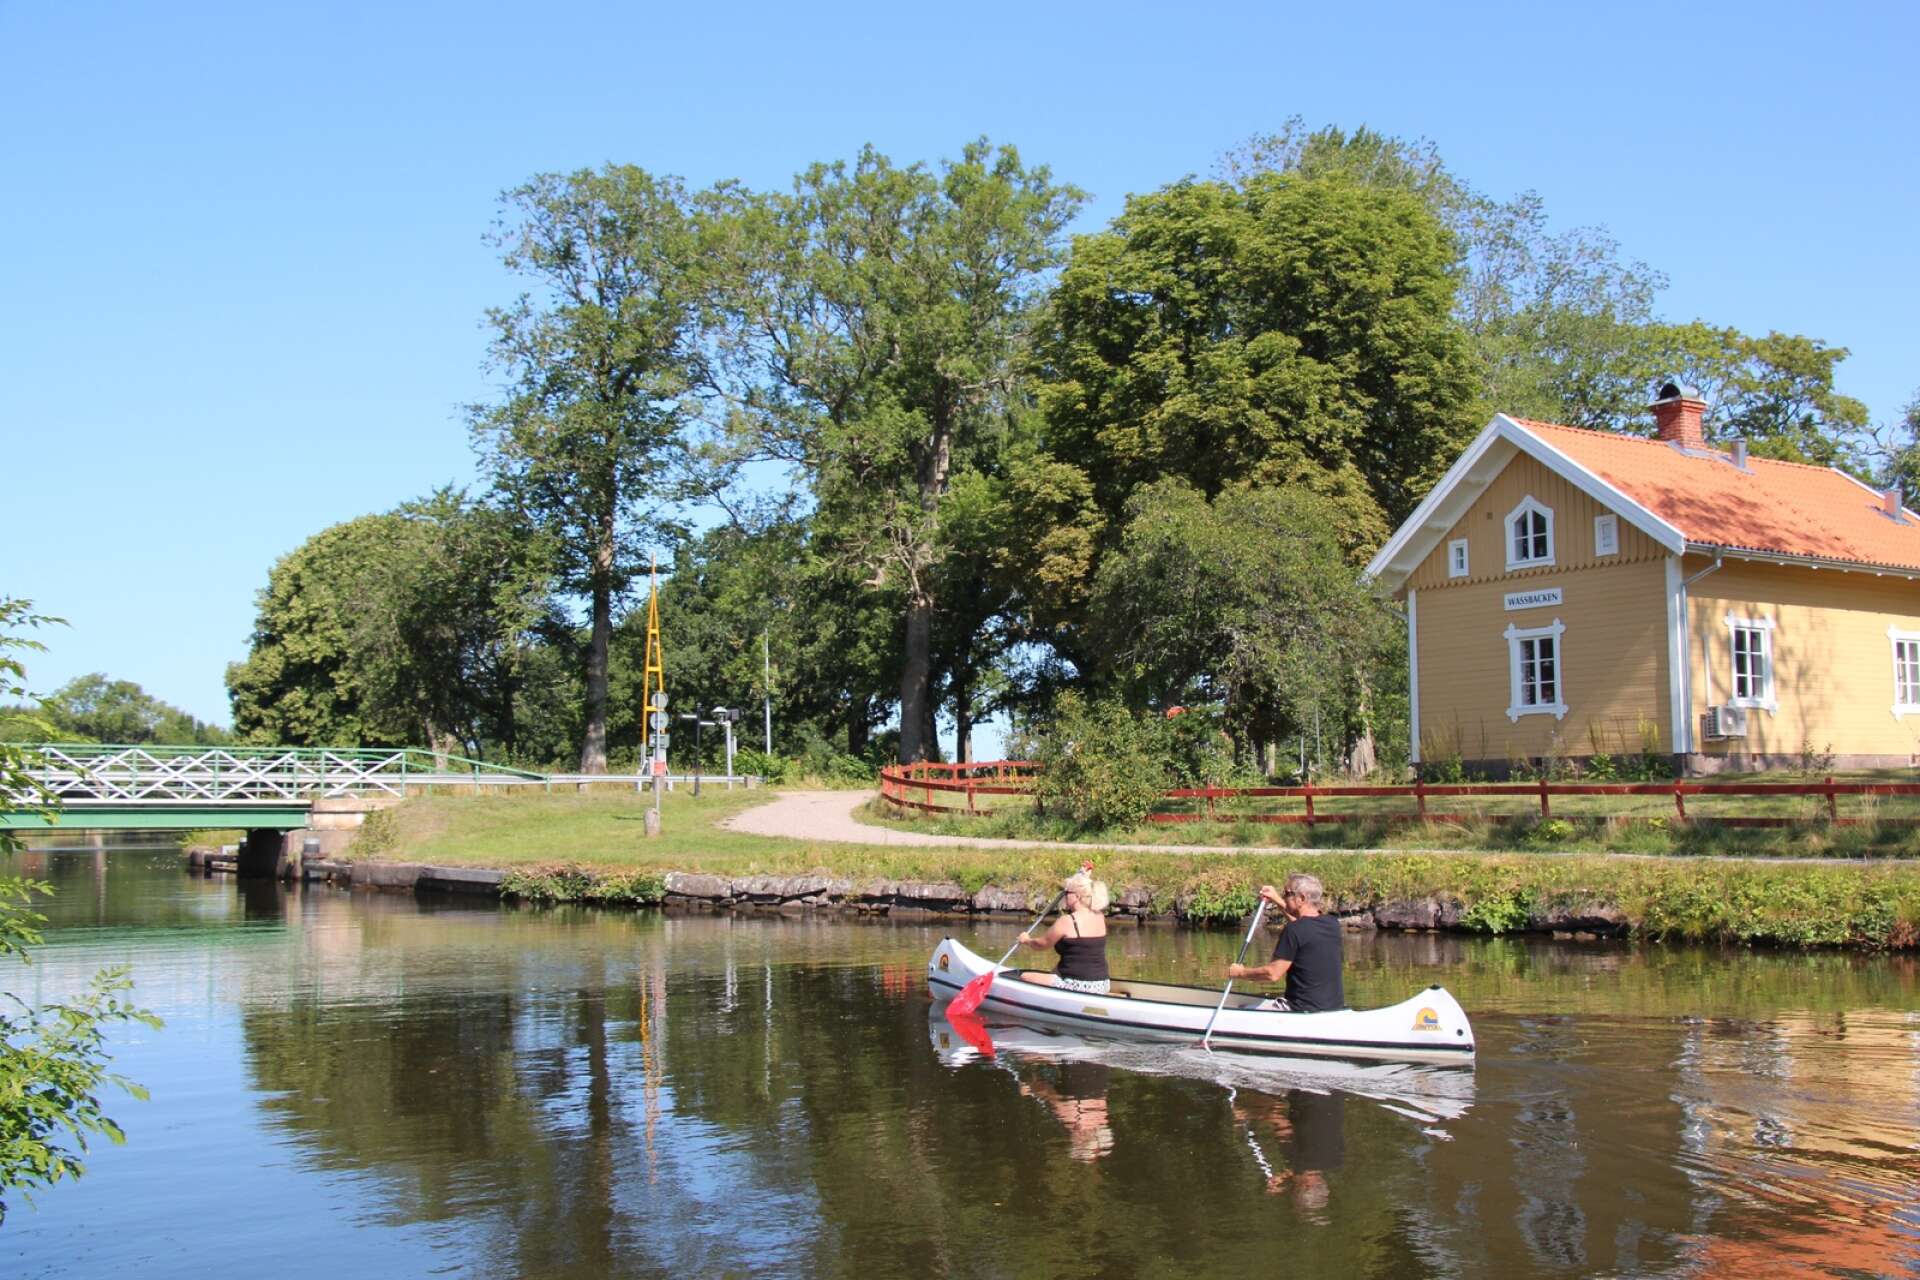 Vassbacken ligger drygt fem kilometer från Tåtorp, där Göta kanal möter sjön Viken, och drygt en mil från Töreboda.